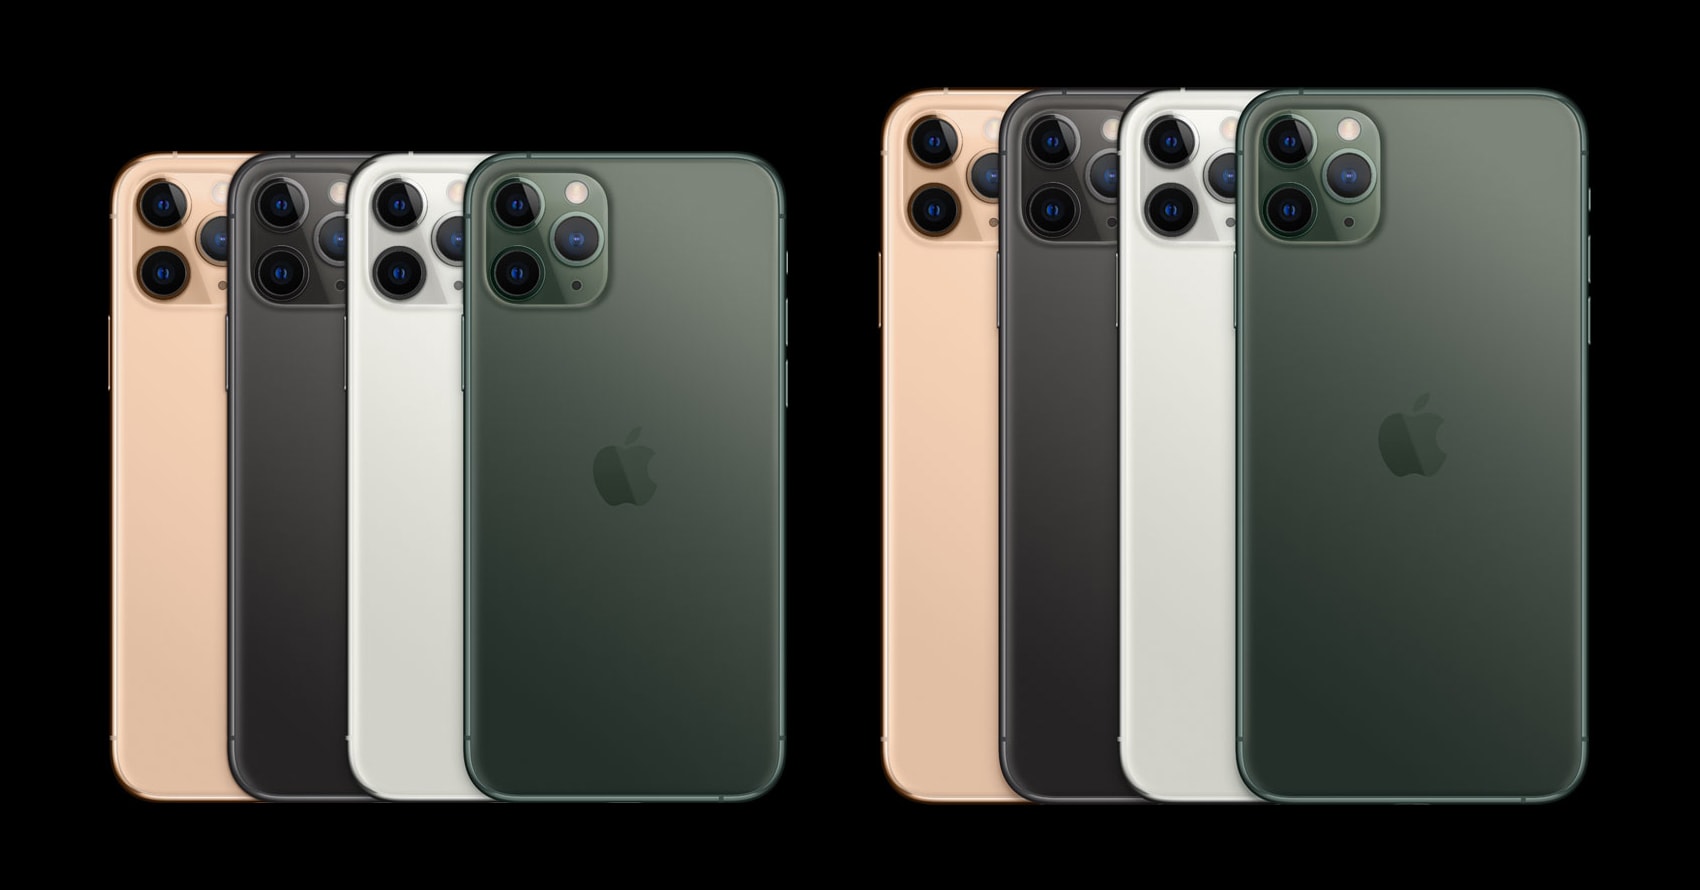 أجهزة iPhone 11 Pro و 11 Pro Max بالألوان الثلاثة